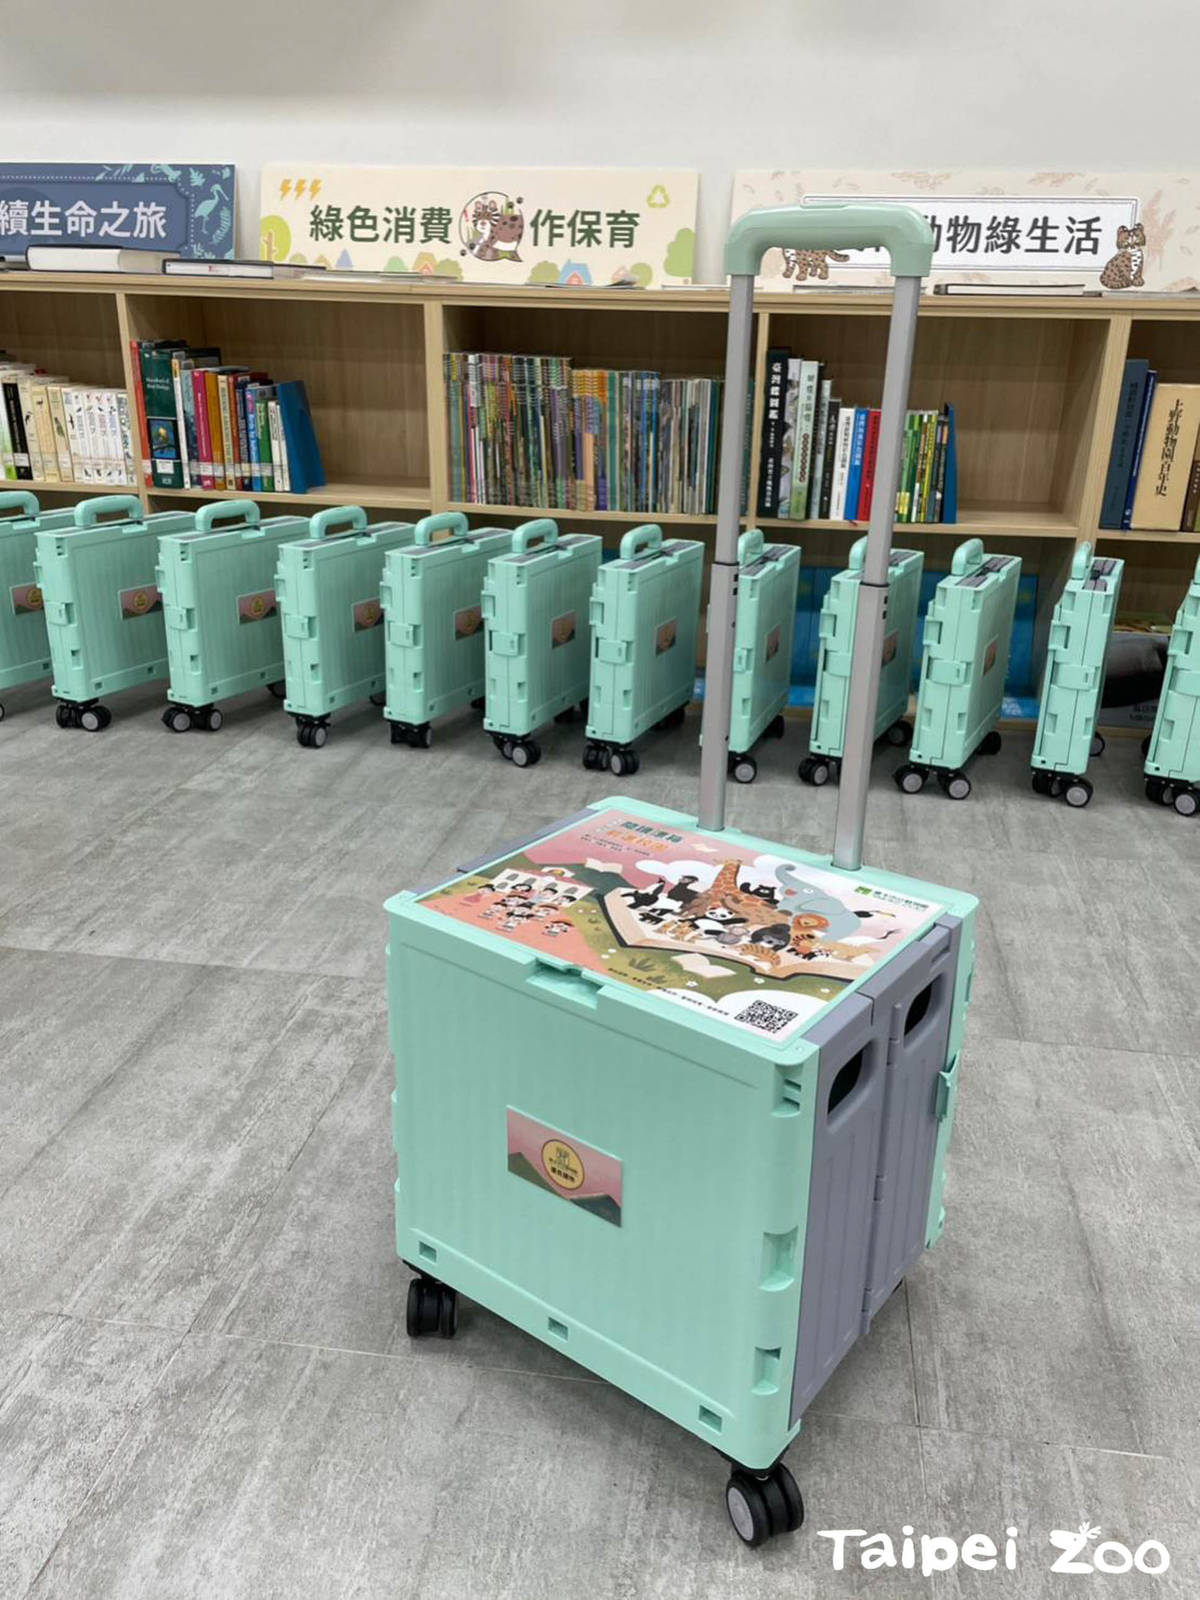 臺北市立動物園設計「保育閱讀漂箱」計畫，透過閱讀讓孩子學習與大自然和諧共處